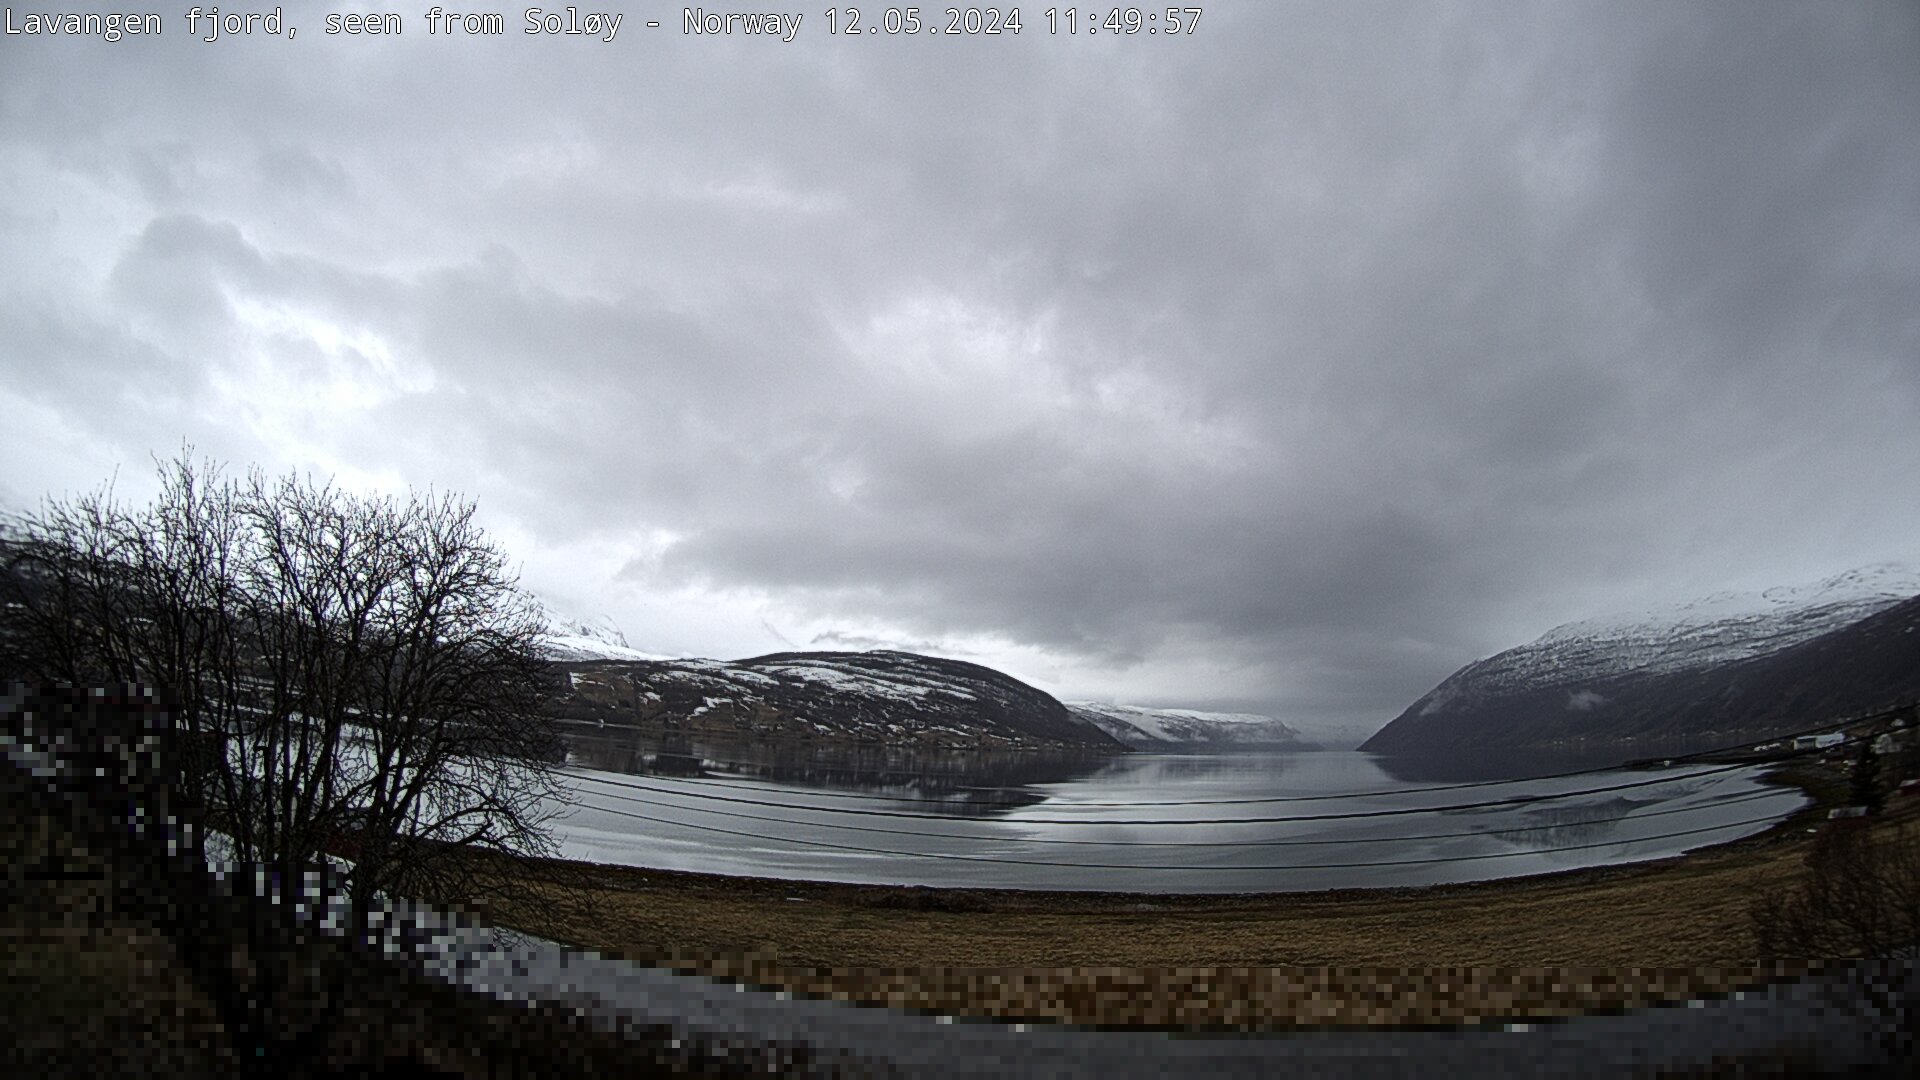 Webcam Soløy, Lavangen, Troms, Norwegen